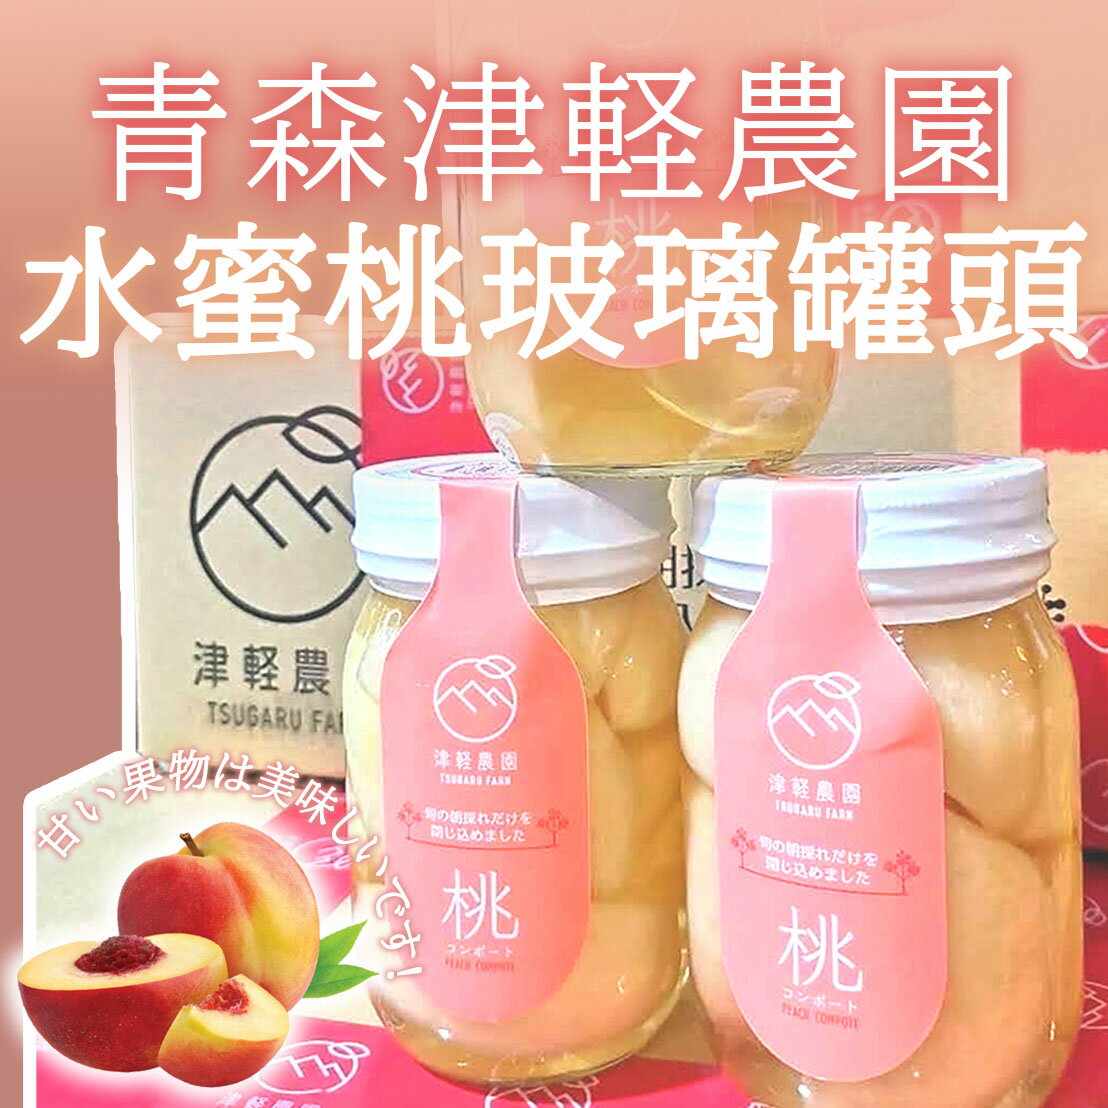 青森津軽農園-水蜜桃玻璃罐頭| 鴻彣國際鮮果水產| 樂天市場Rakuten